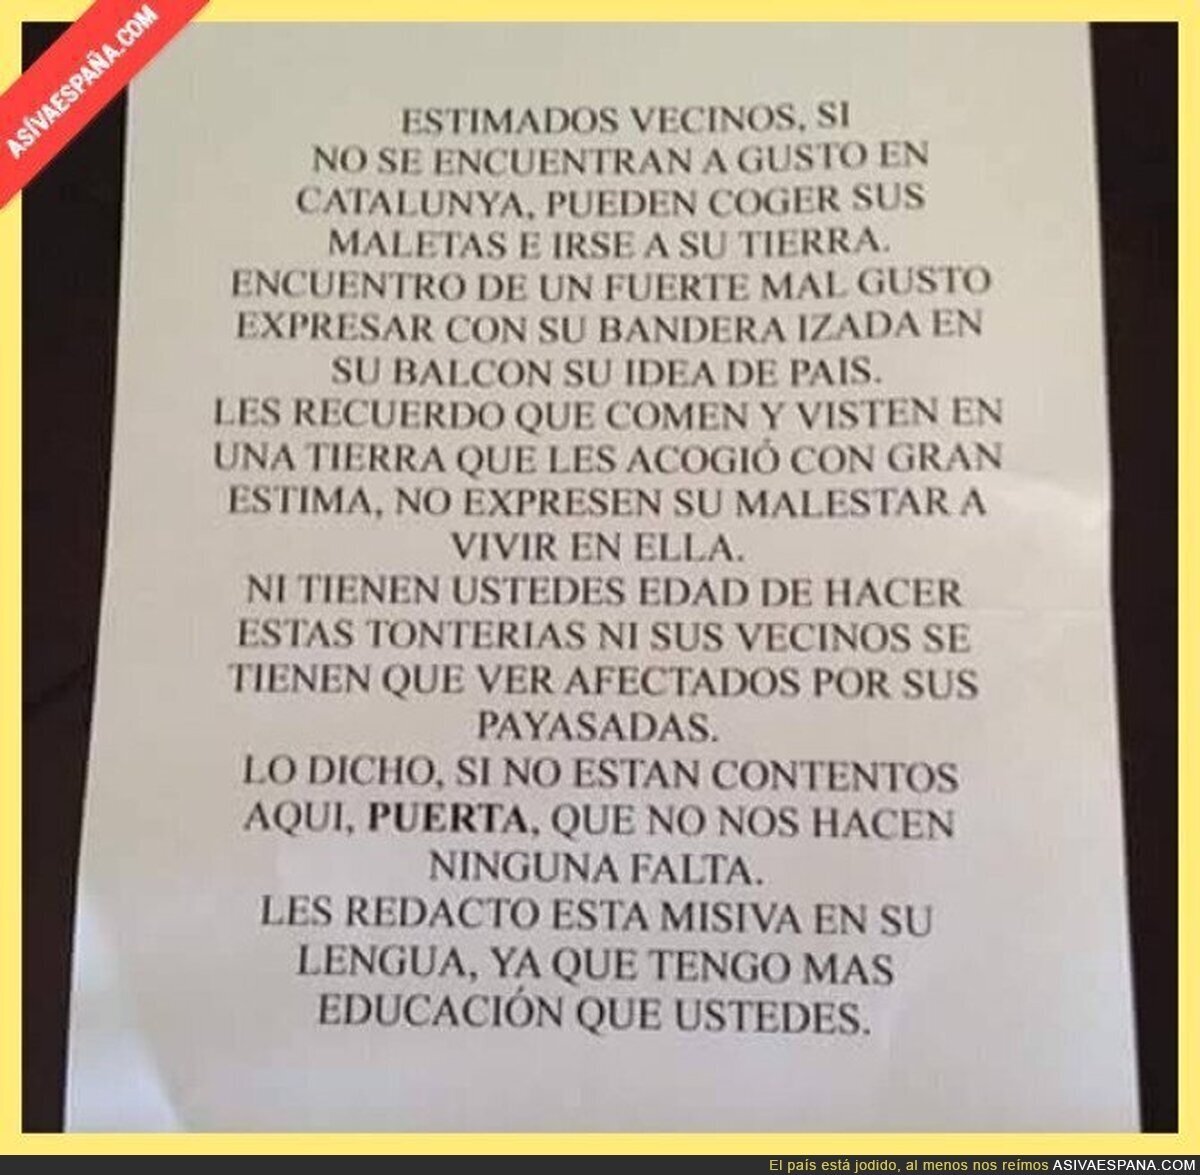 La nota escrita de un vecino a otro por poner una bandera española en el balcón en Cataluña